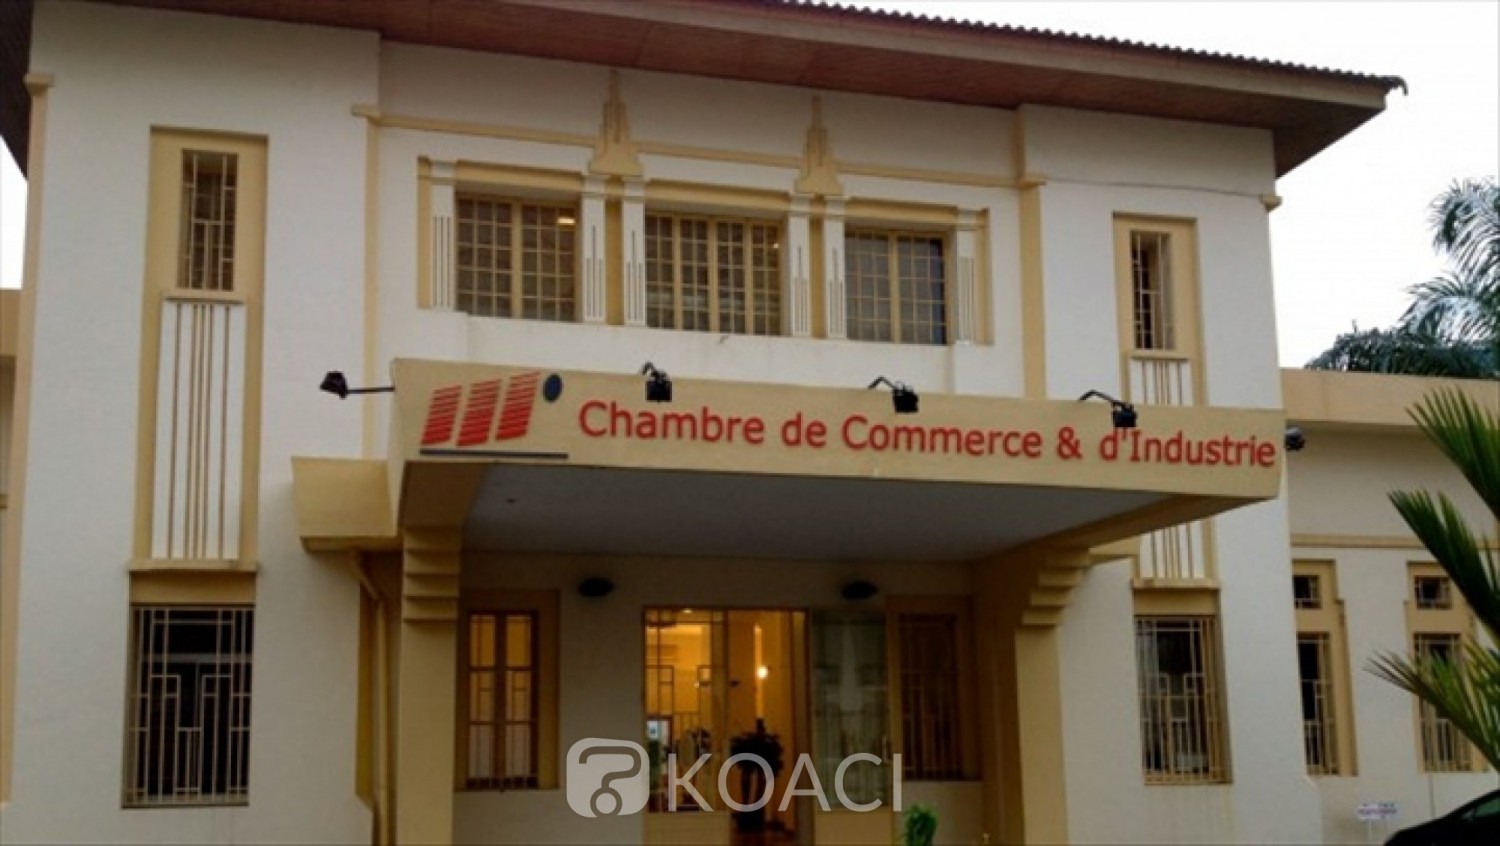 Côte d'Ivoire: Les entreprises invitées  à faire leur demande en vue d'obtenir leur numéro d'Identifiant Unique (IDU) avant le 31 décembre 2020